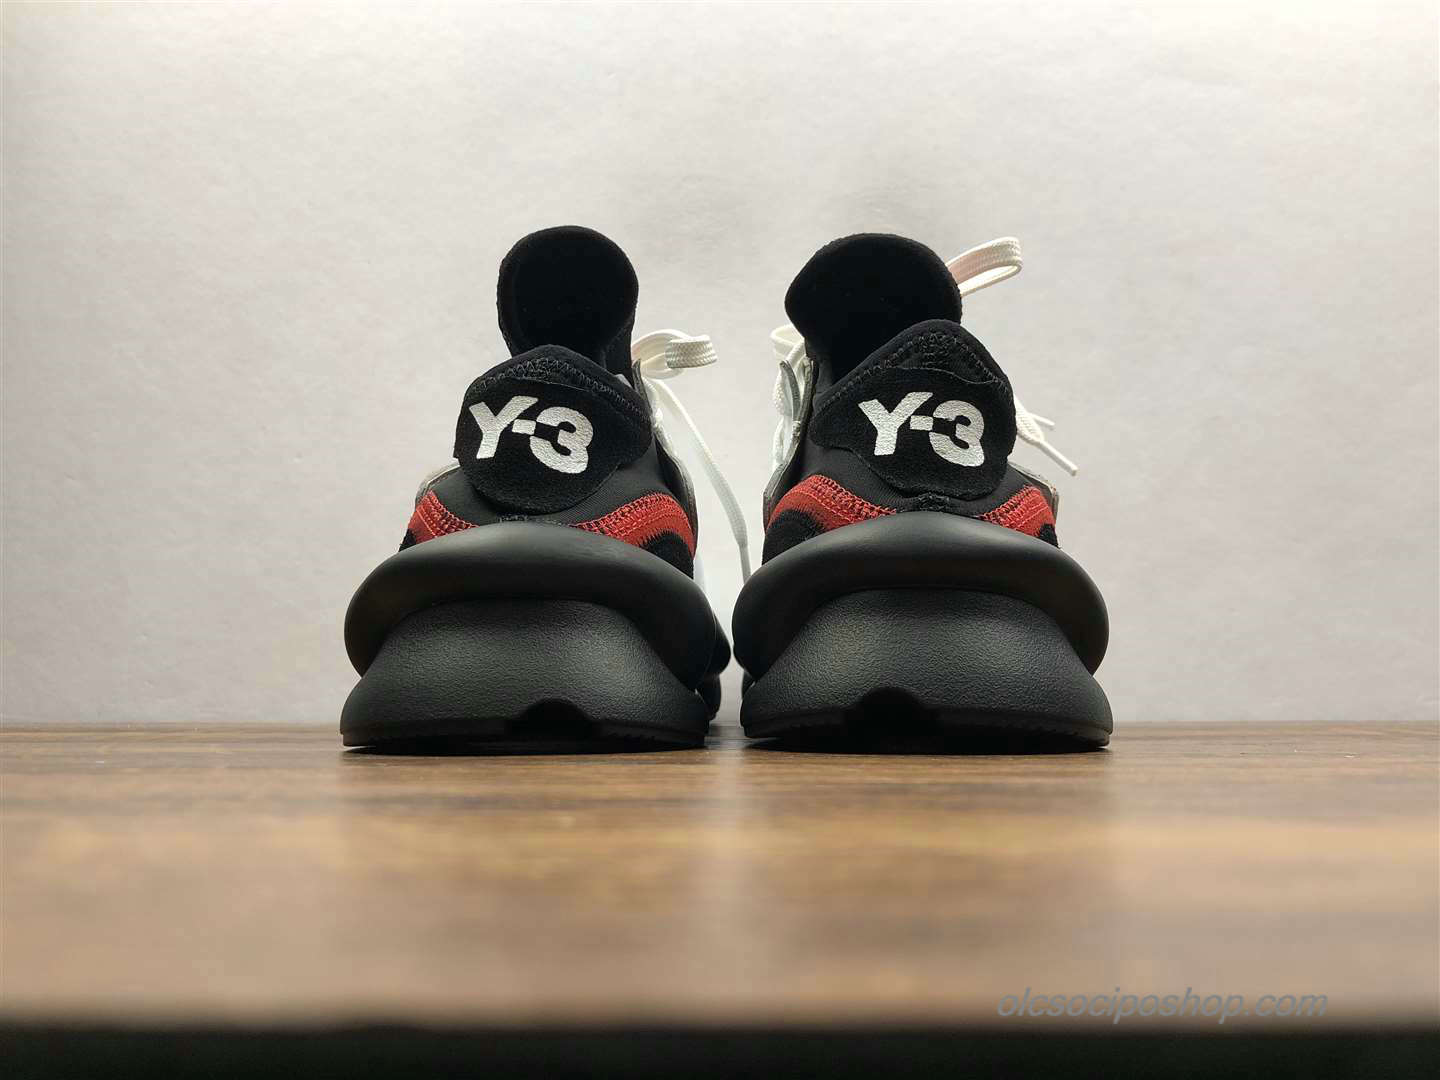 Yohji Yamamoto x Adidas Y-3 Kaiwa Chunky Fehér/Fekete/Piros Cipők (A8996) - Kattintásra bezárul